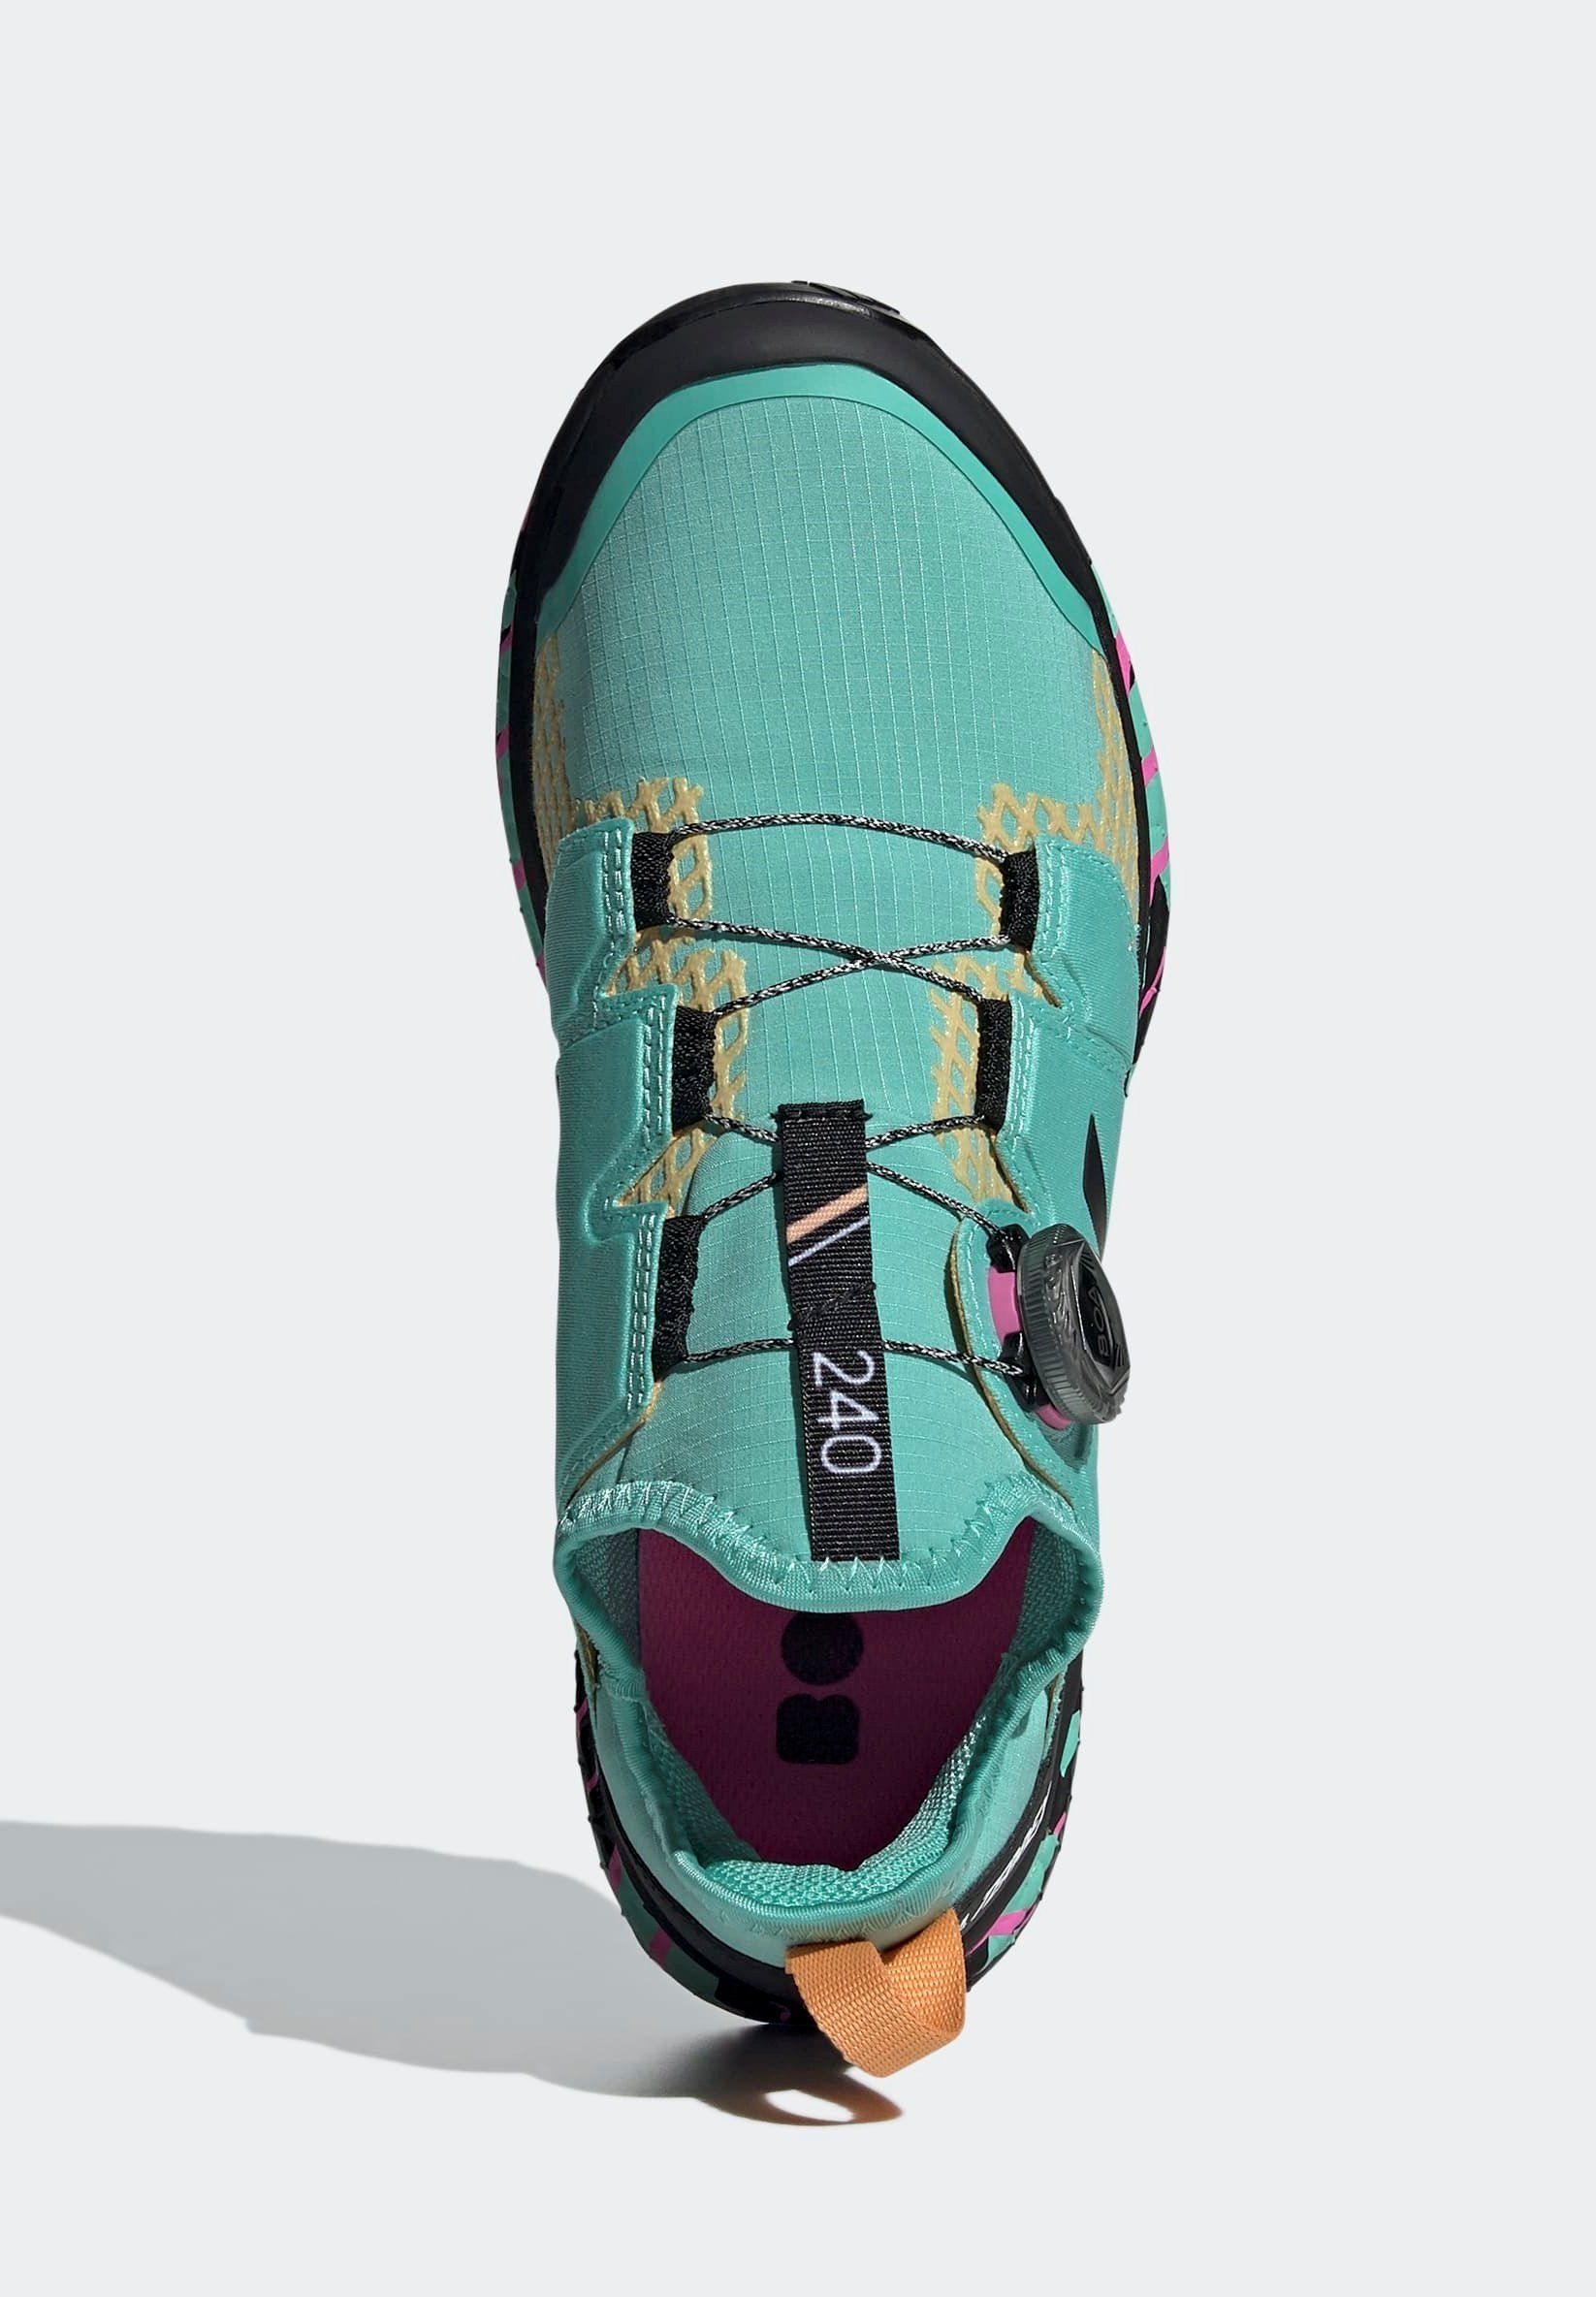 Фото № 4 с приближением к товару «‎Adidas Terrex Agravic Boa Technical Boost Trail Shoes»